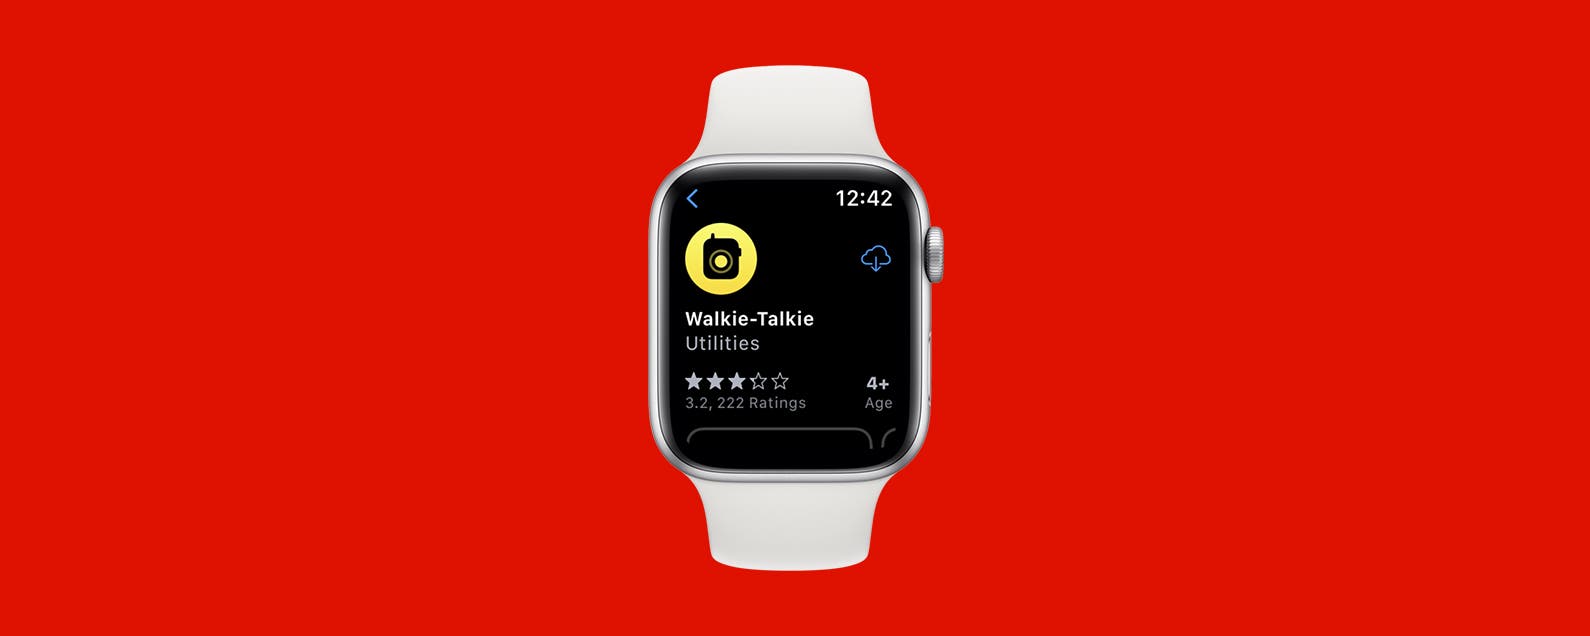 walkie-talkie-auf-der-apple-watch-funktioniert-nicht?-probieren-sie-diese-einfachen-losungen-aus-(2022)